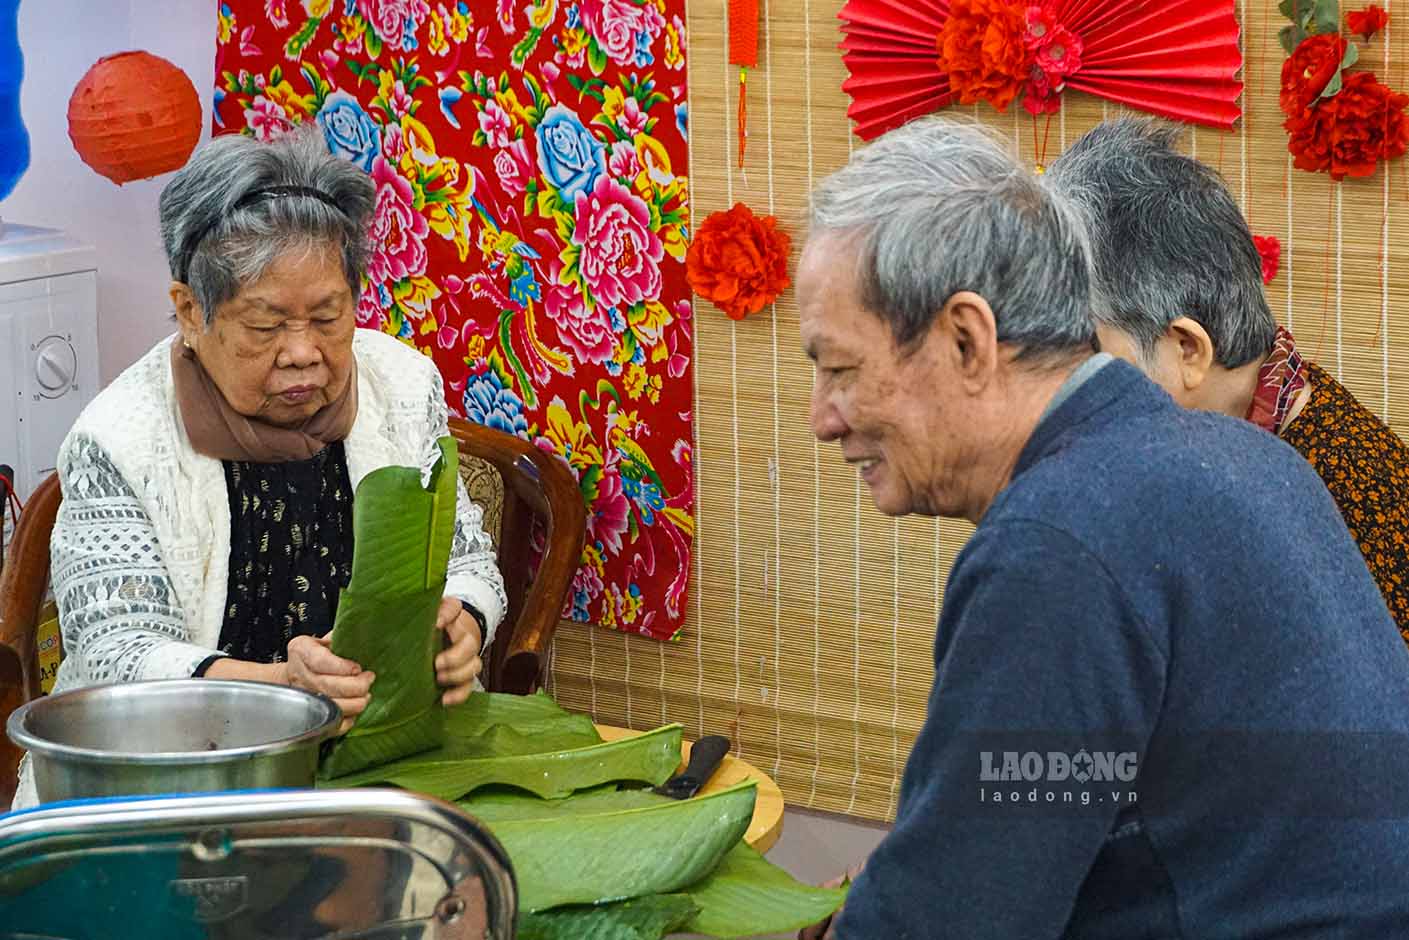 Ngày hội gói bánh chưng đã dần trở thành một món ăn tinh thần cho người cao tuổi cũng như đội ngũ nhân viên tại Diên Hồng vào những ngày cận Tết.